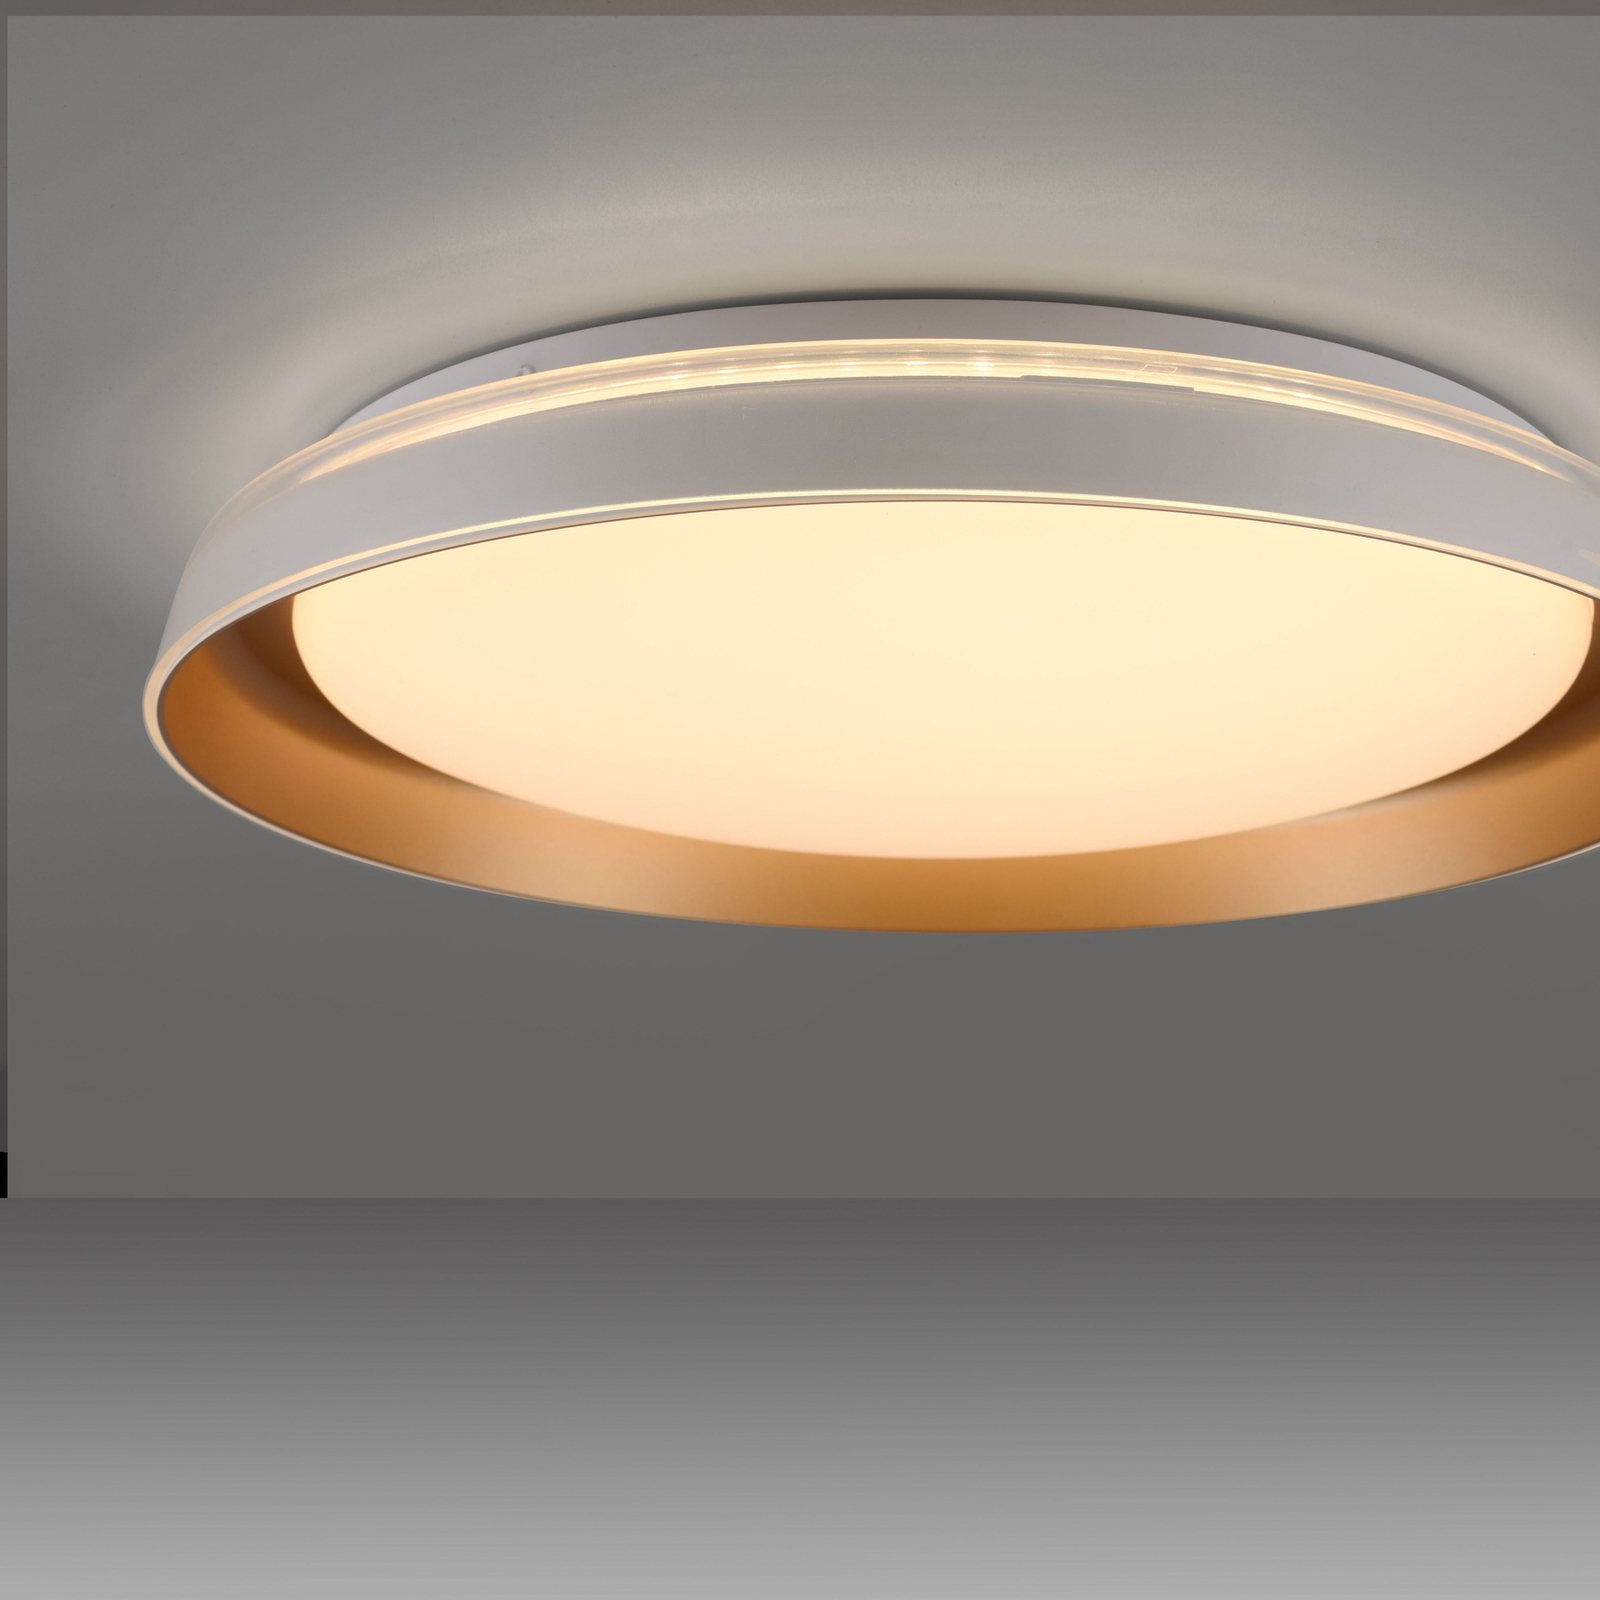 JUST LIGHT. Sati LED ceiling light, plastic, white/brass